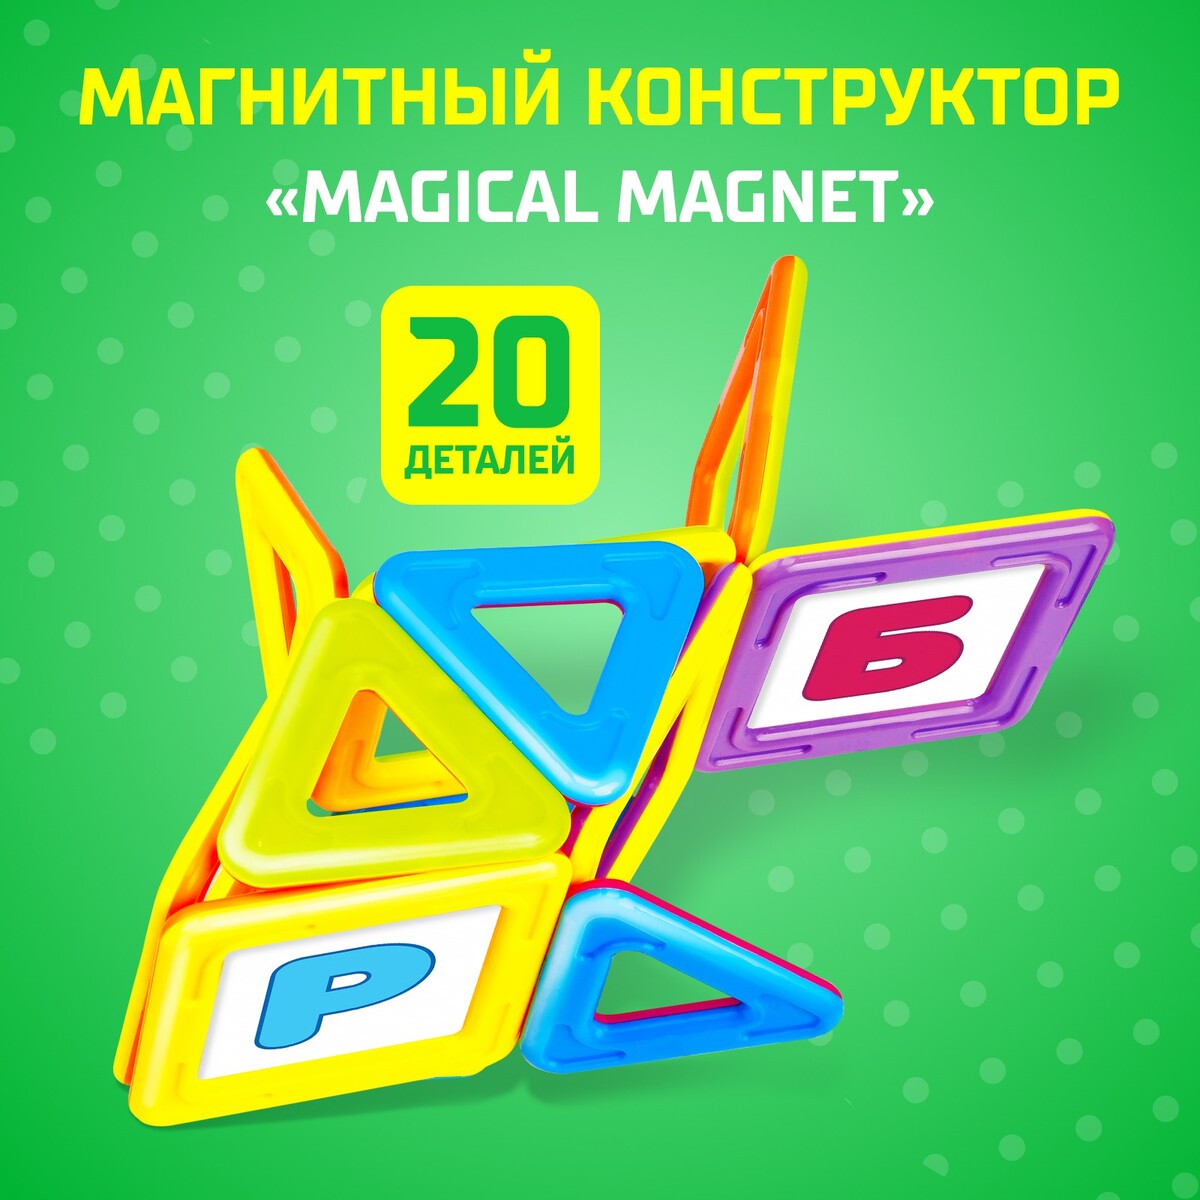 Магнитный конструктор magical magnet, 20 деталей, детали матовые магнитный конструктор magical magnet 56 деталей детали матовые